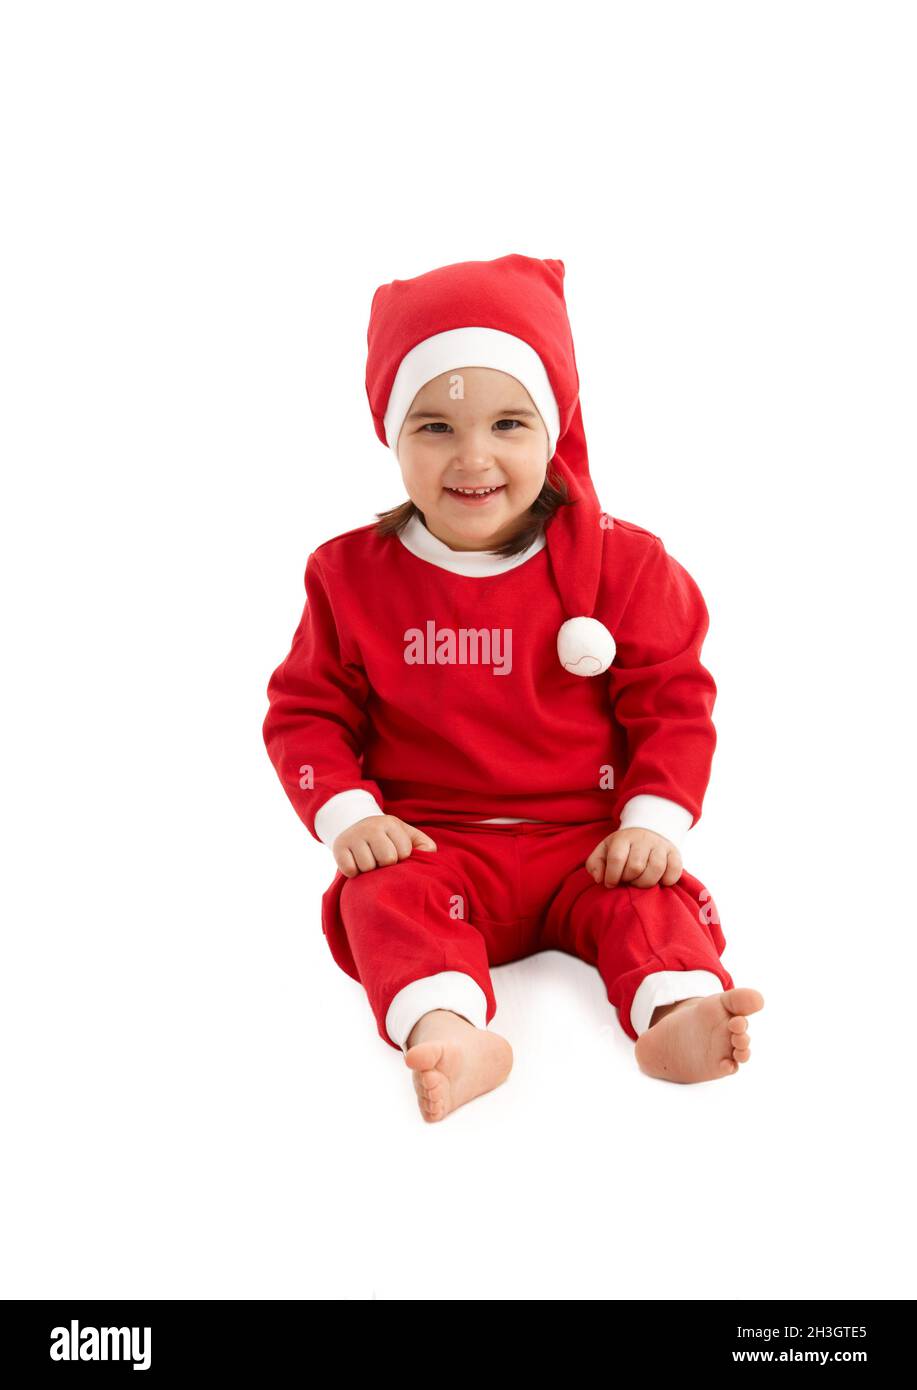 Weihnachtsmann Kostüm auf kleines Kind Stockfoto